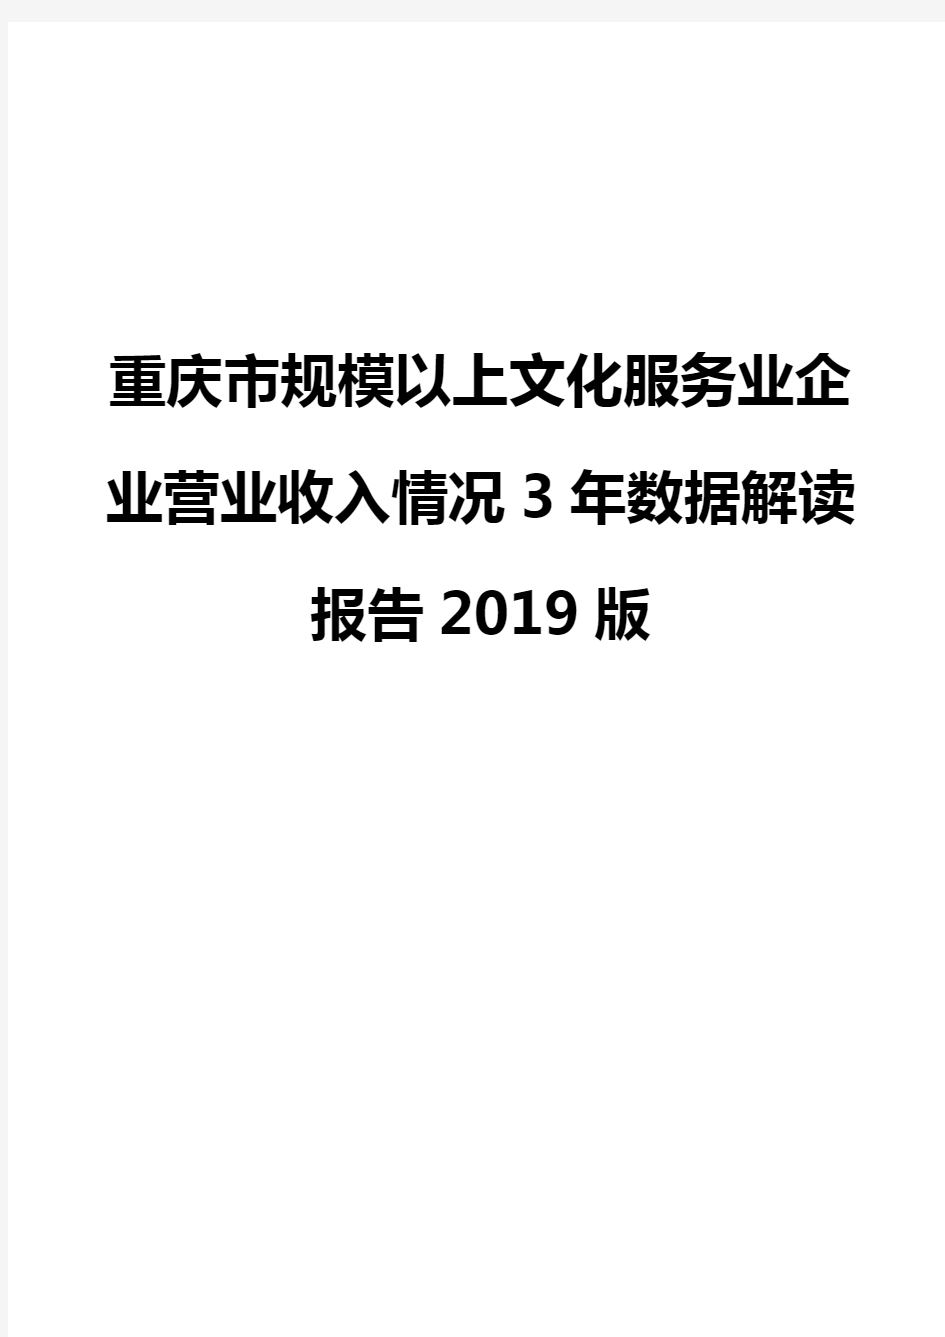 重庆市规模以上文化服务业企业营业收入情况3年数据解读报告2019版